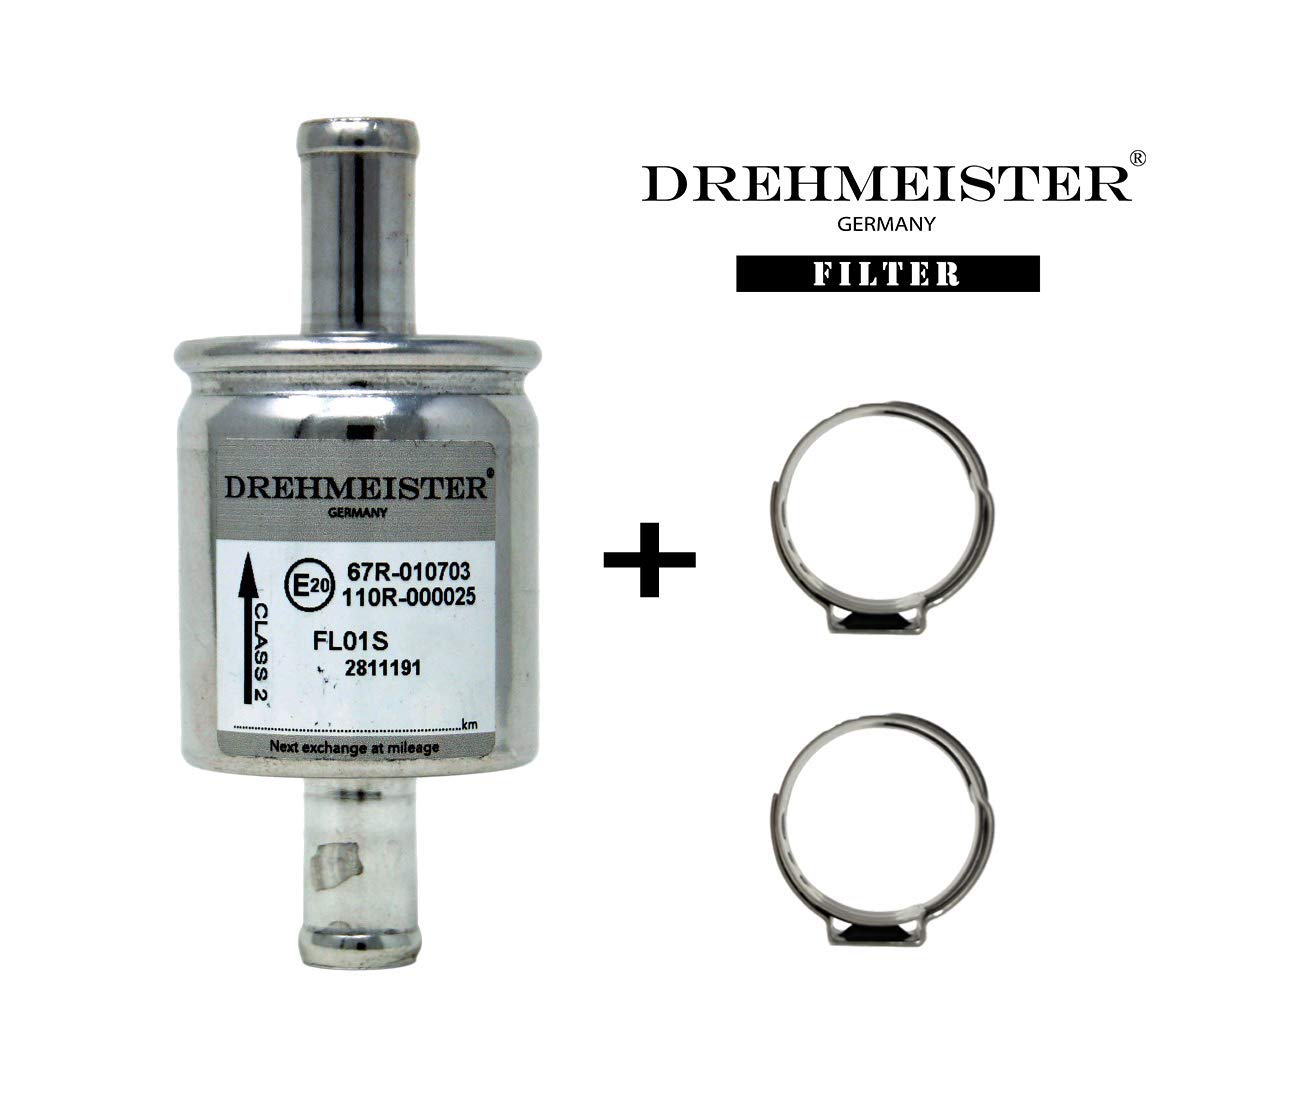 DREHMEISTER Premium Gasfilter LPG Filter Set inkl. Qualitätsschellen 12mm x 12mm BRC BIGAS ZAVOLI STARGAS KME Stag Lovato Zenit von Drehmeister